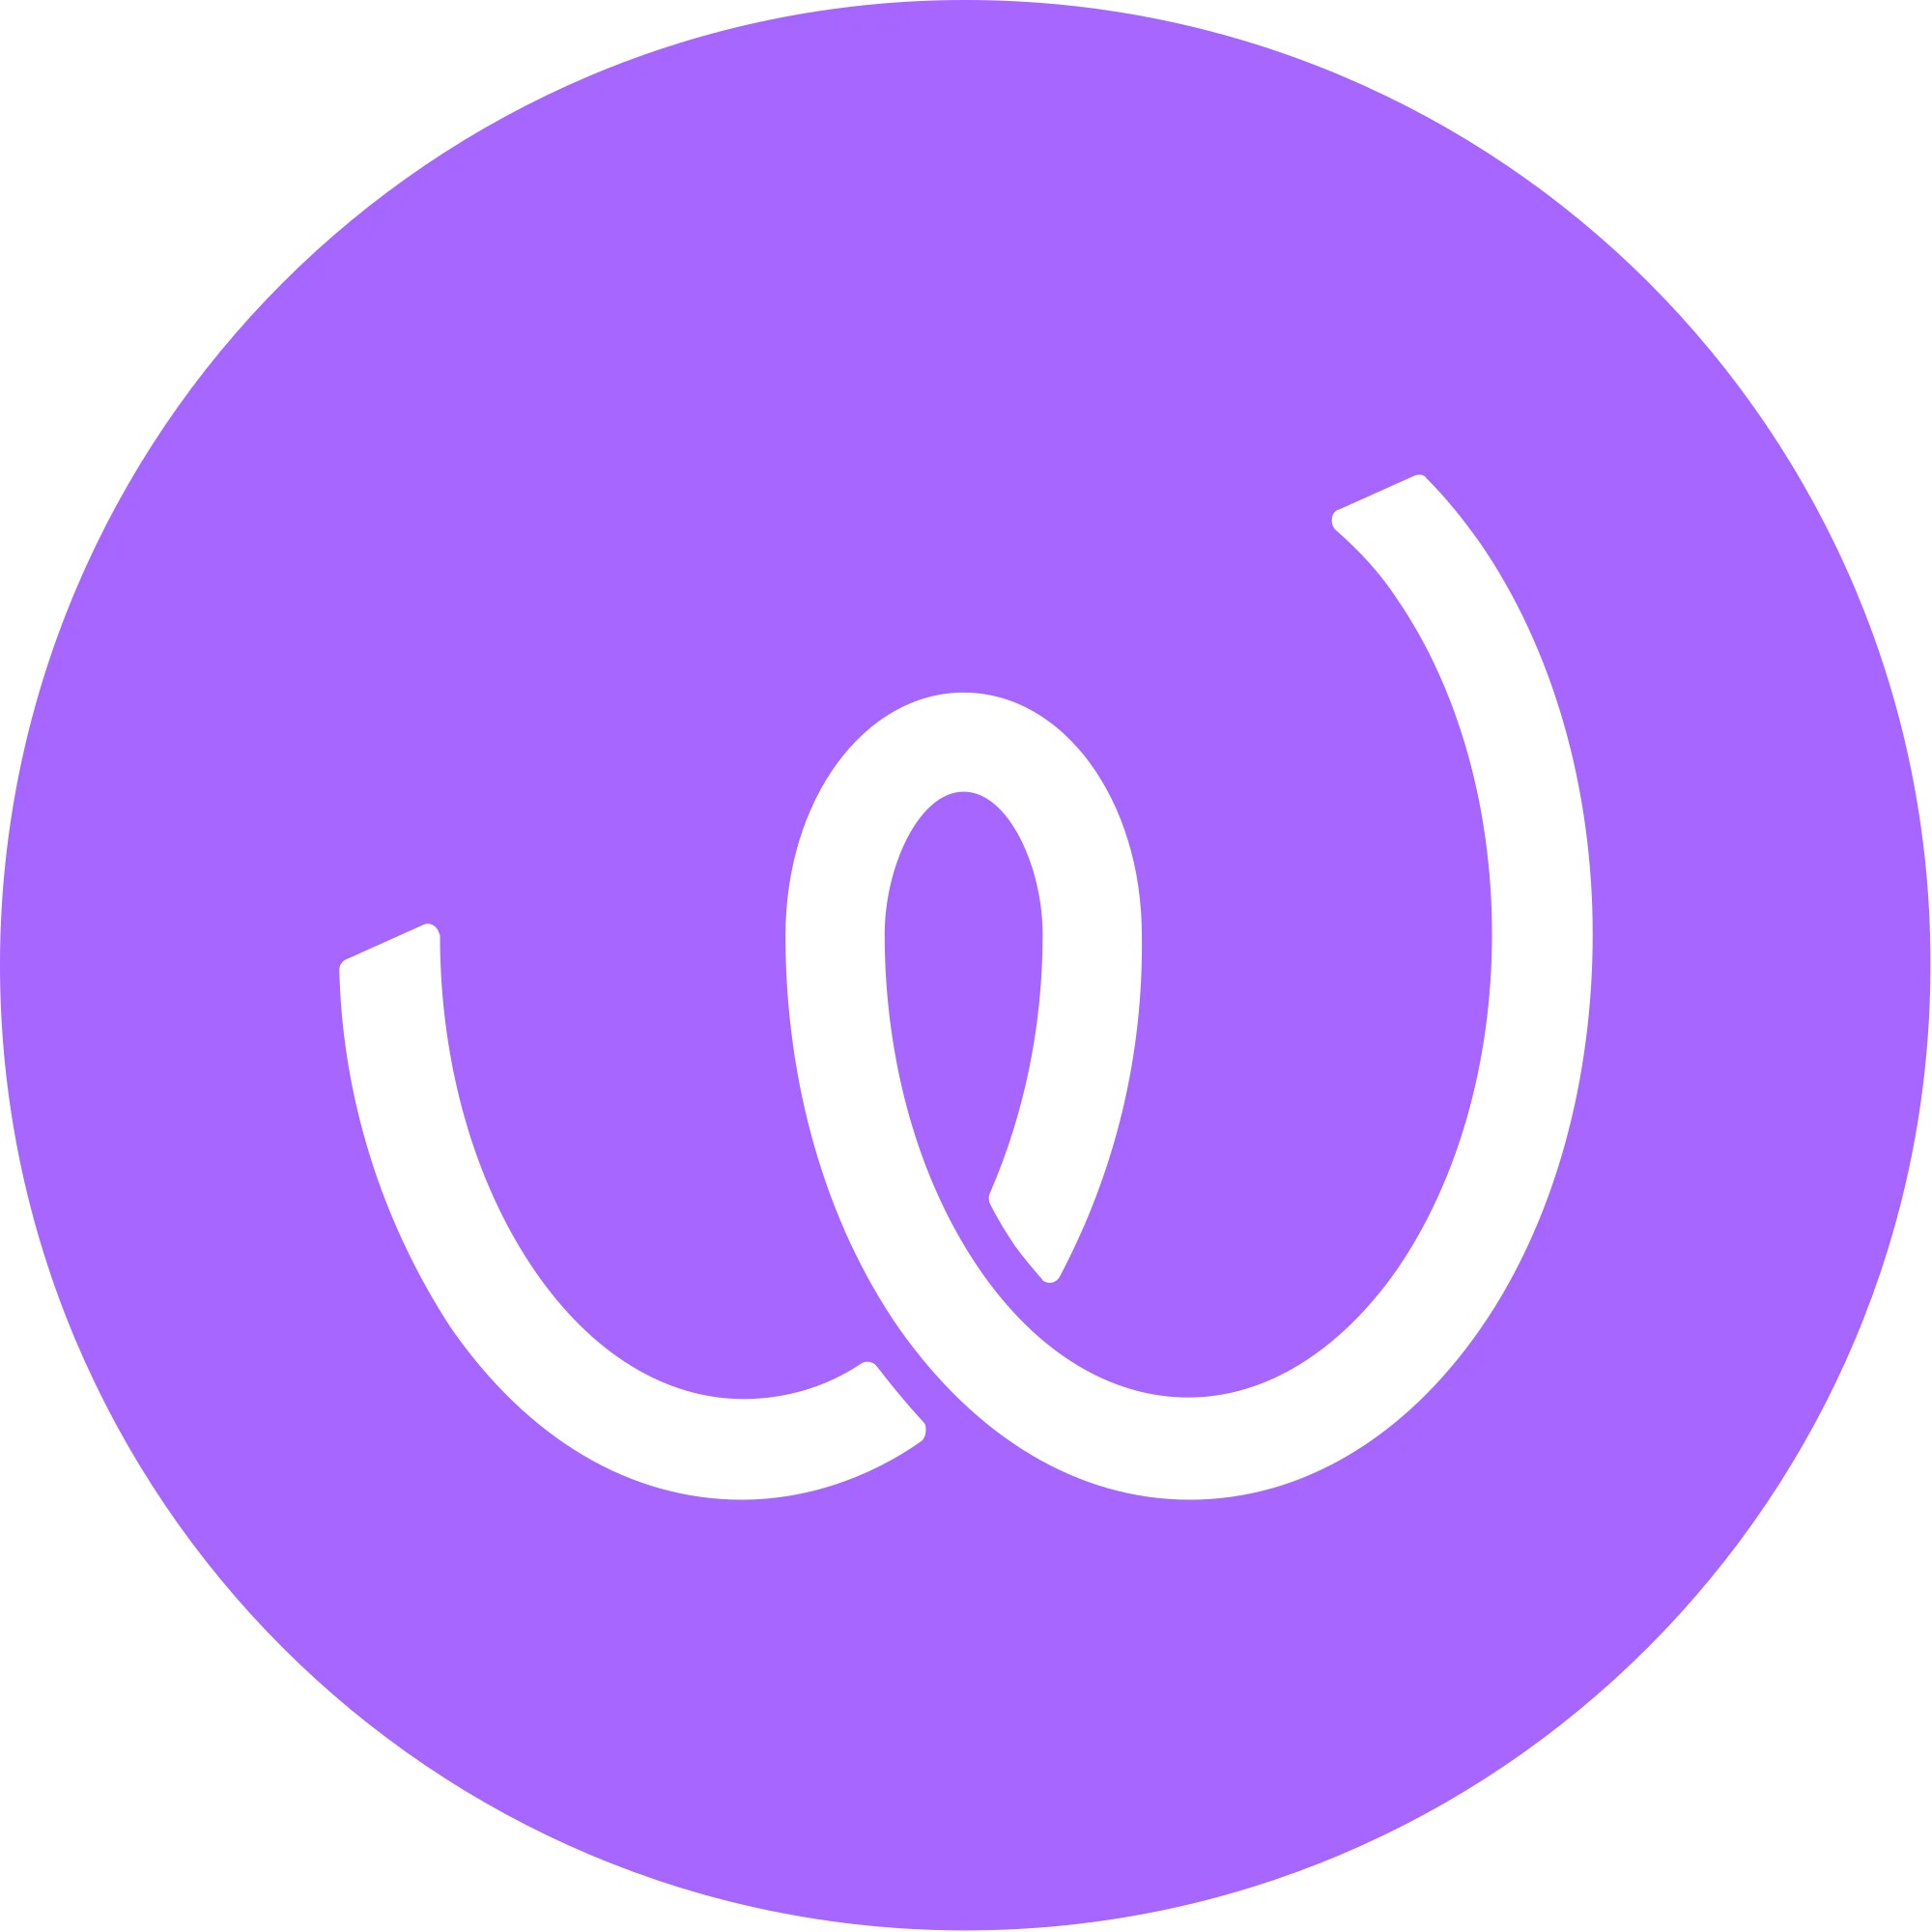 Energy Web Token (EWT) logo